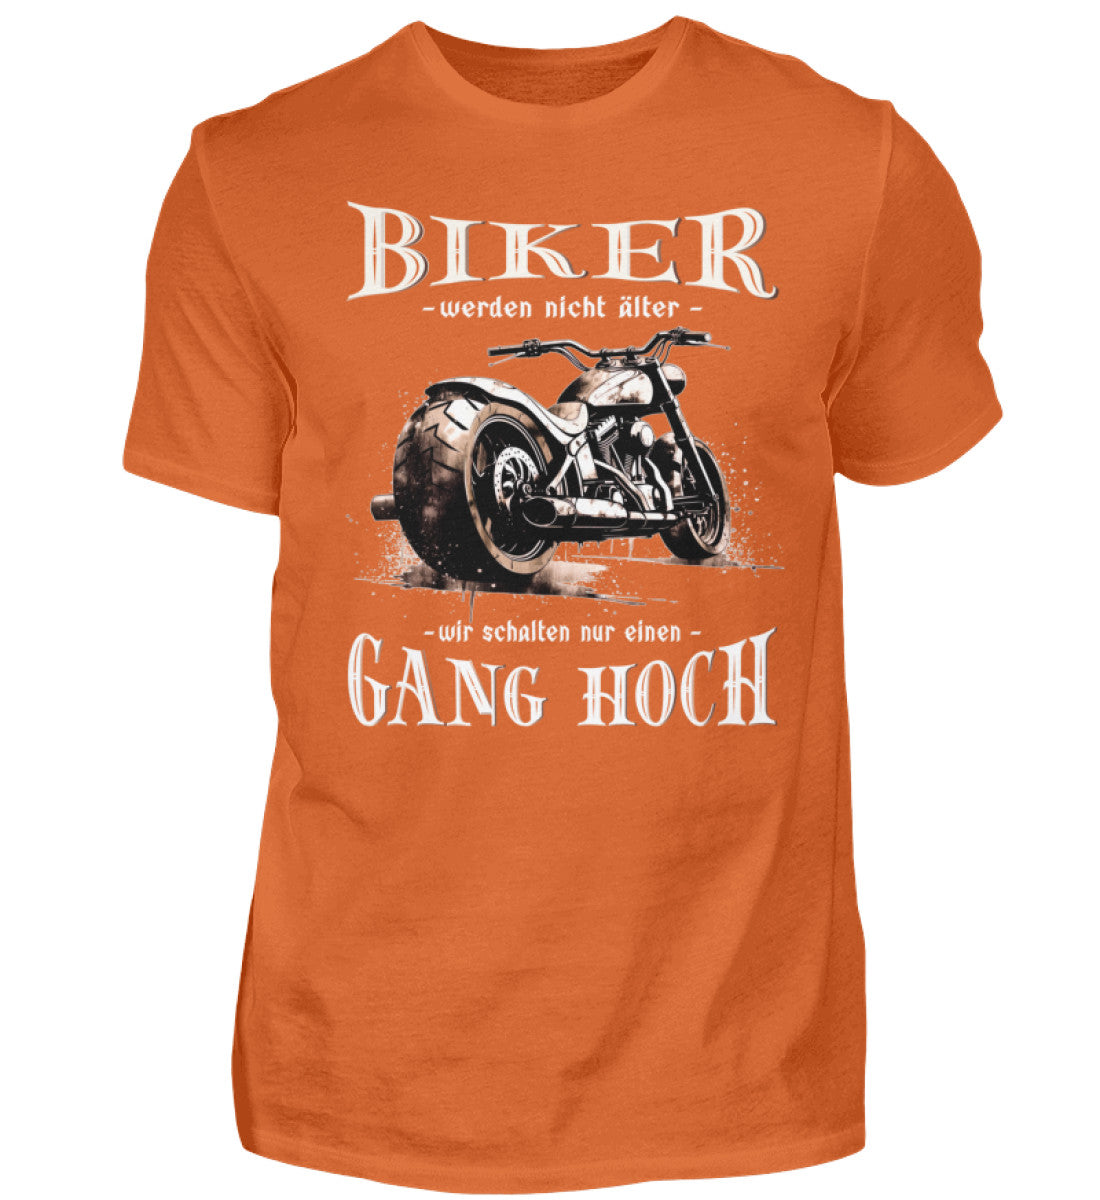 Ein Biker T-Shirt für Motorradfahrer von Wingbikers mit dem Aufdruck, Biker werden nicht älter - Wir schalten nur einen Gang hoch! - in orange.